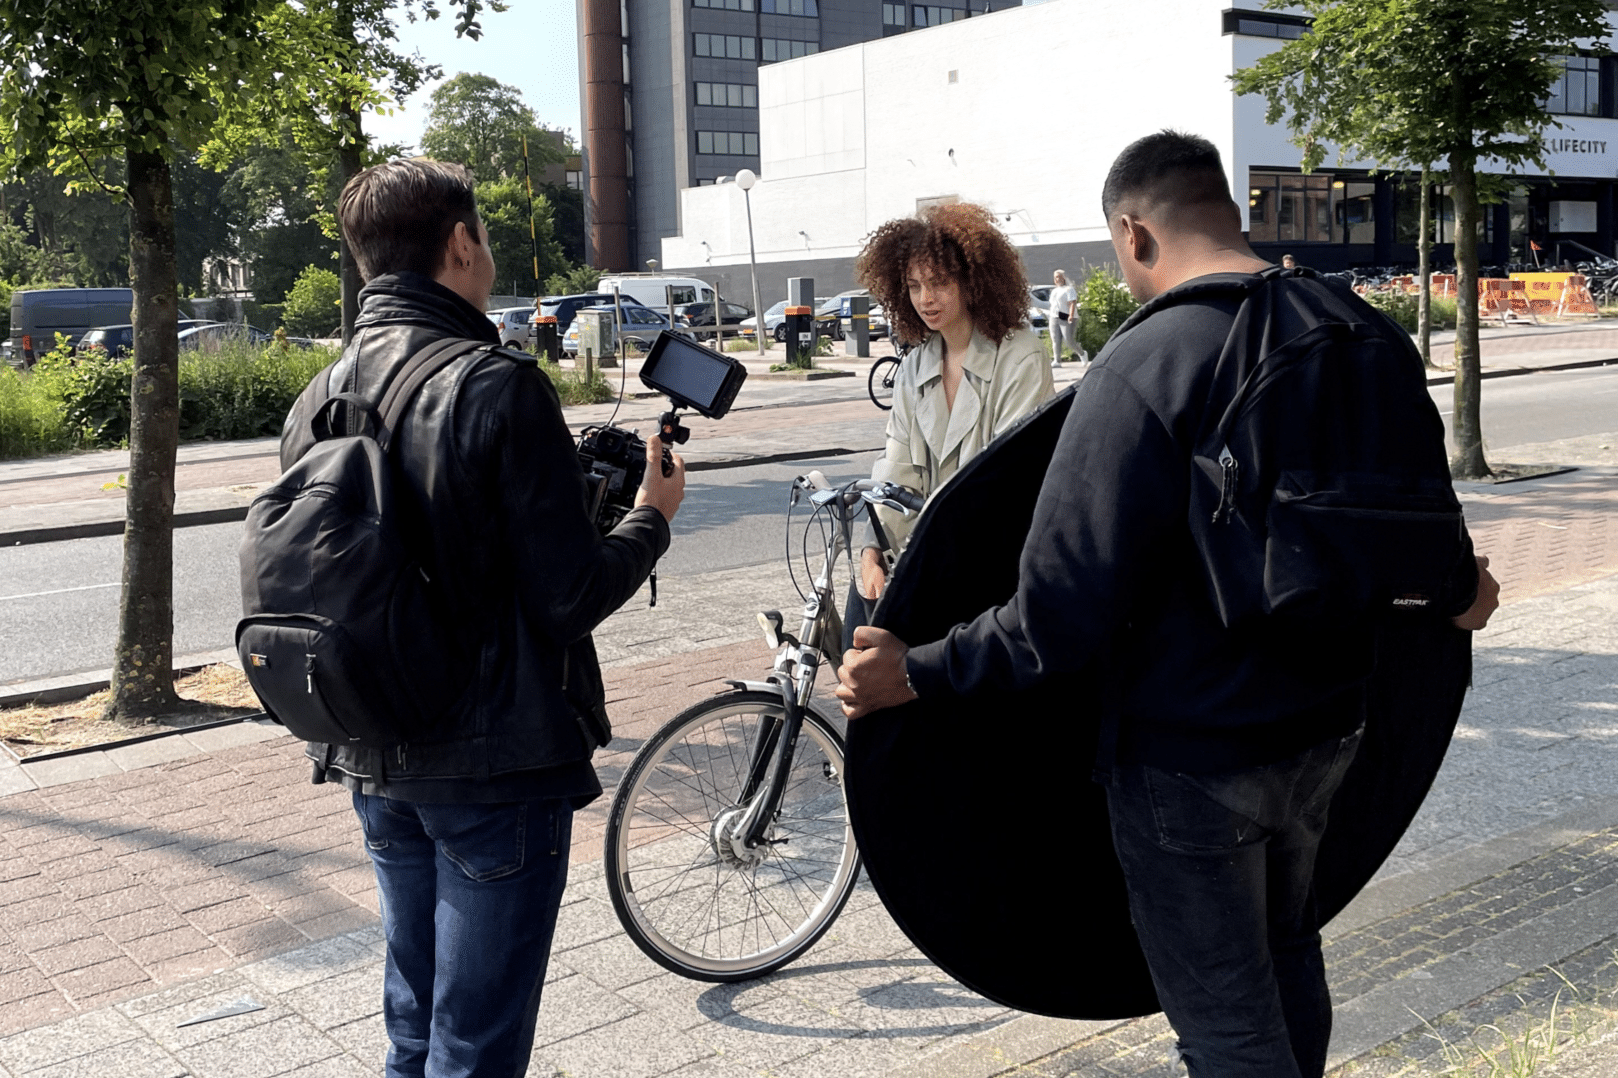 Filmploeg Enof met actrice op straat om een shot op te nemen.